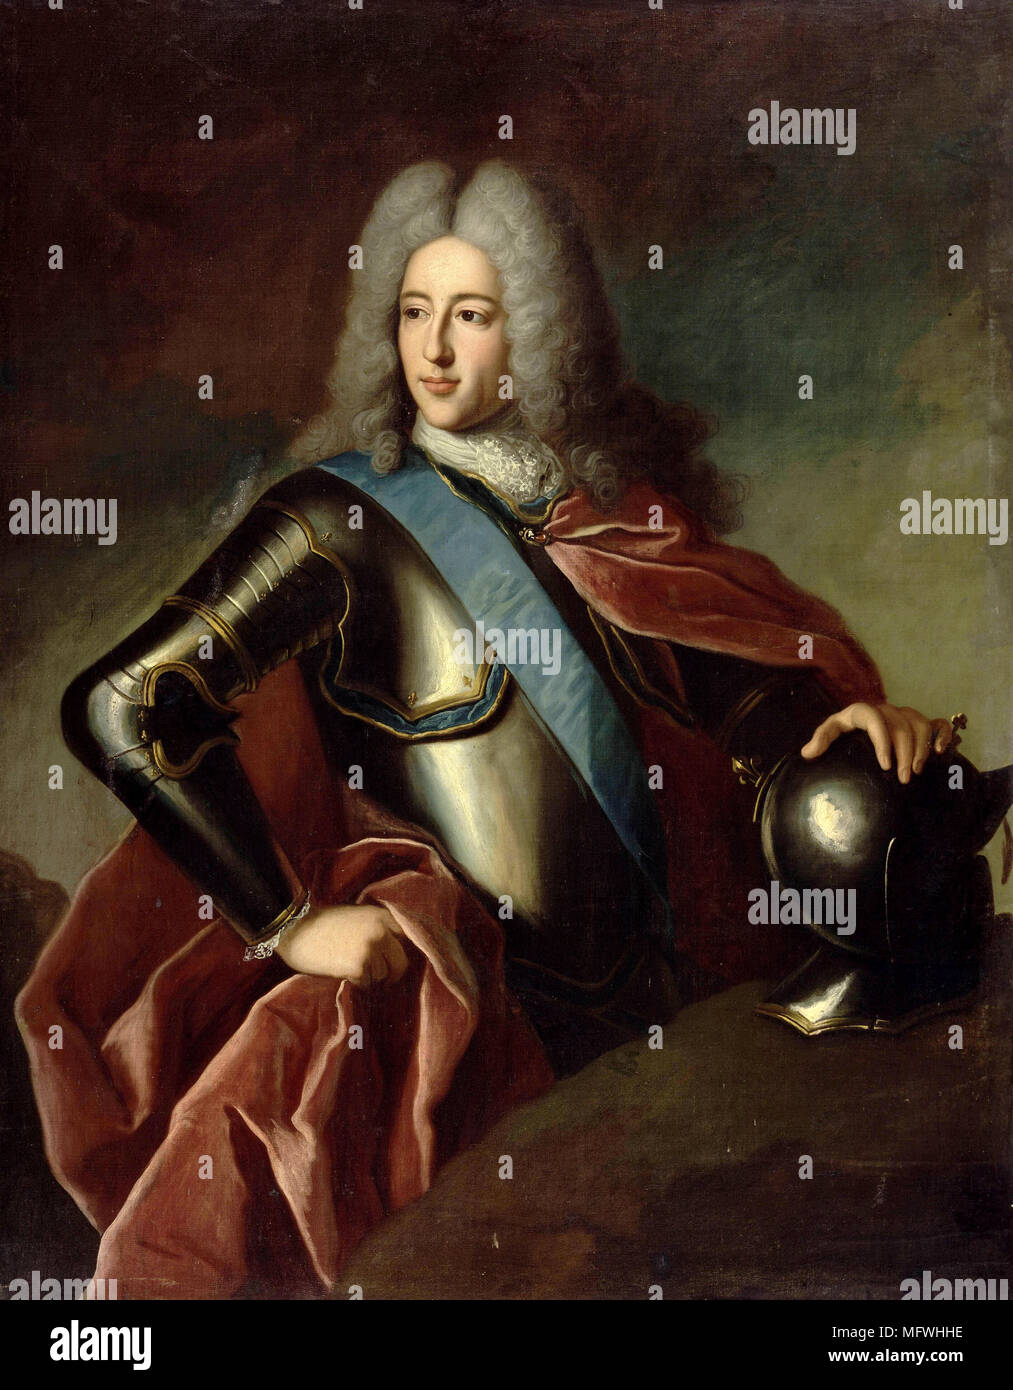 Louis Henri de Bourbon, Prinz von Condé, Herzog von Bourbon (1692-1740) Ministerpräsident von Frankreich von 1723 bis 1726. Stockfoto